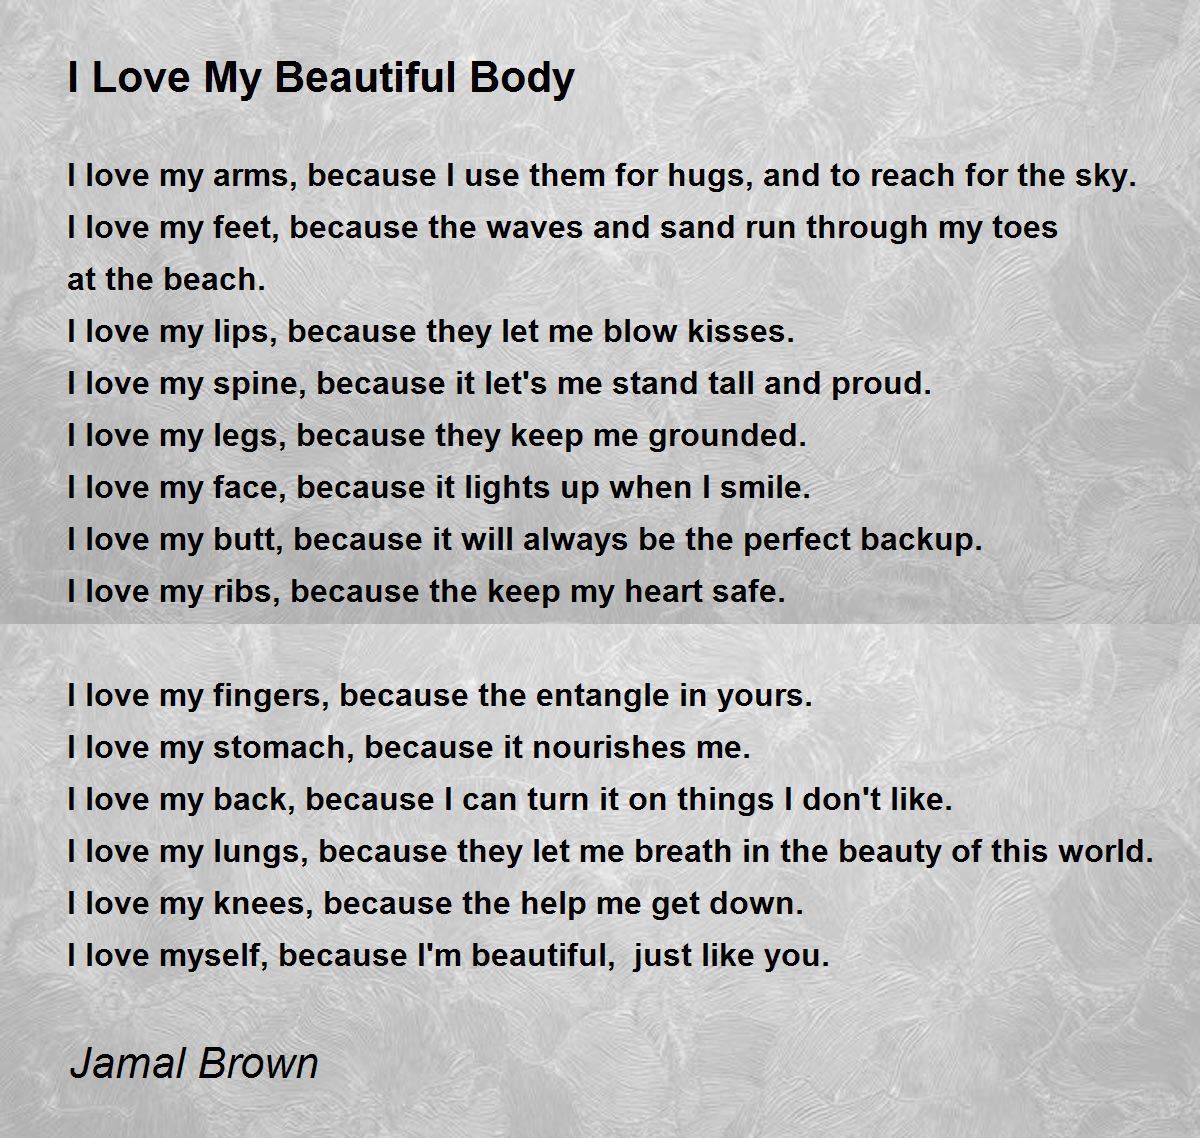 I Love My Beautiful Body - I Love My Beautiful Body Poem by Jamal